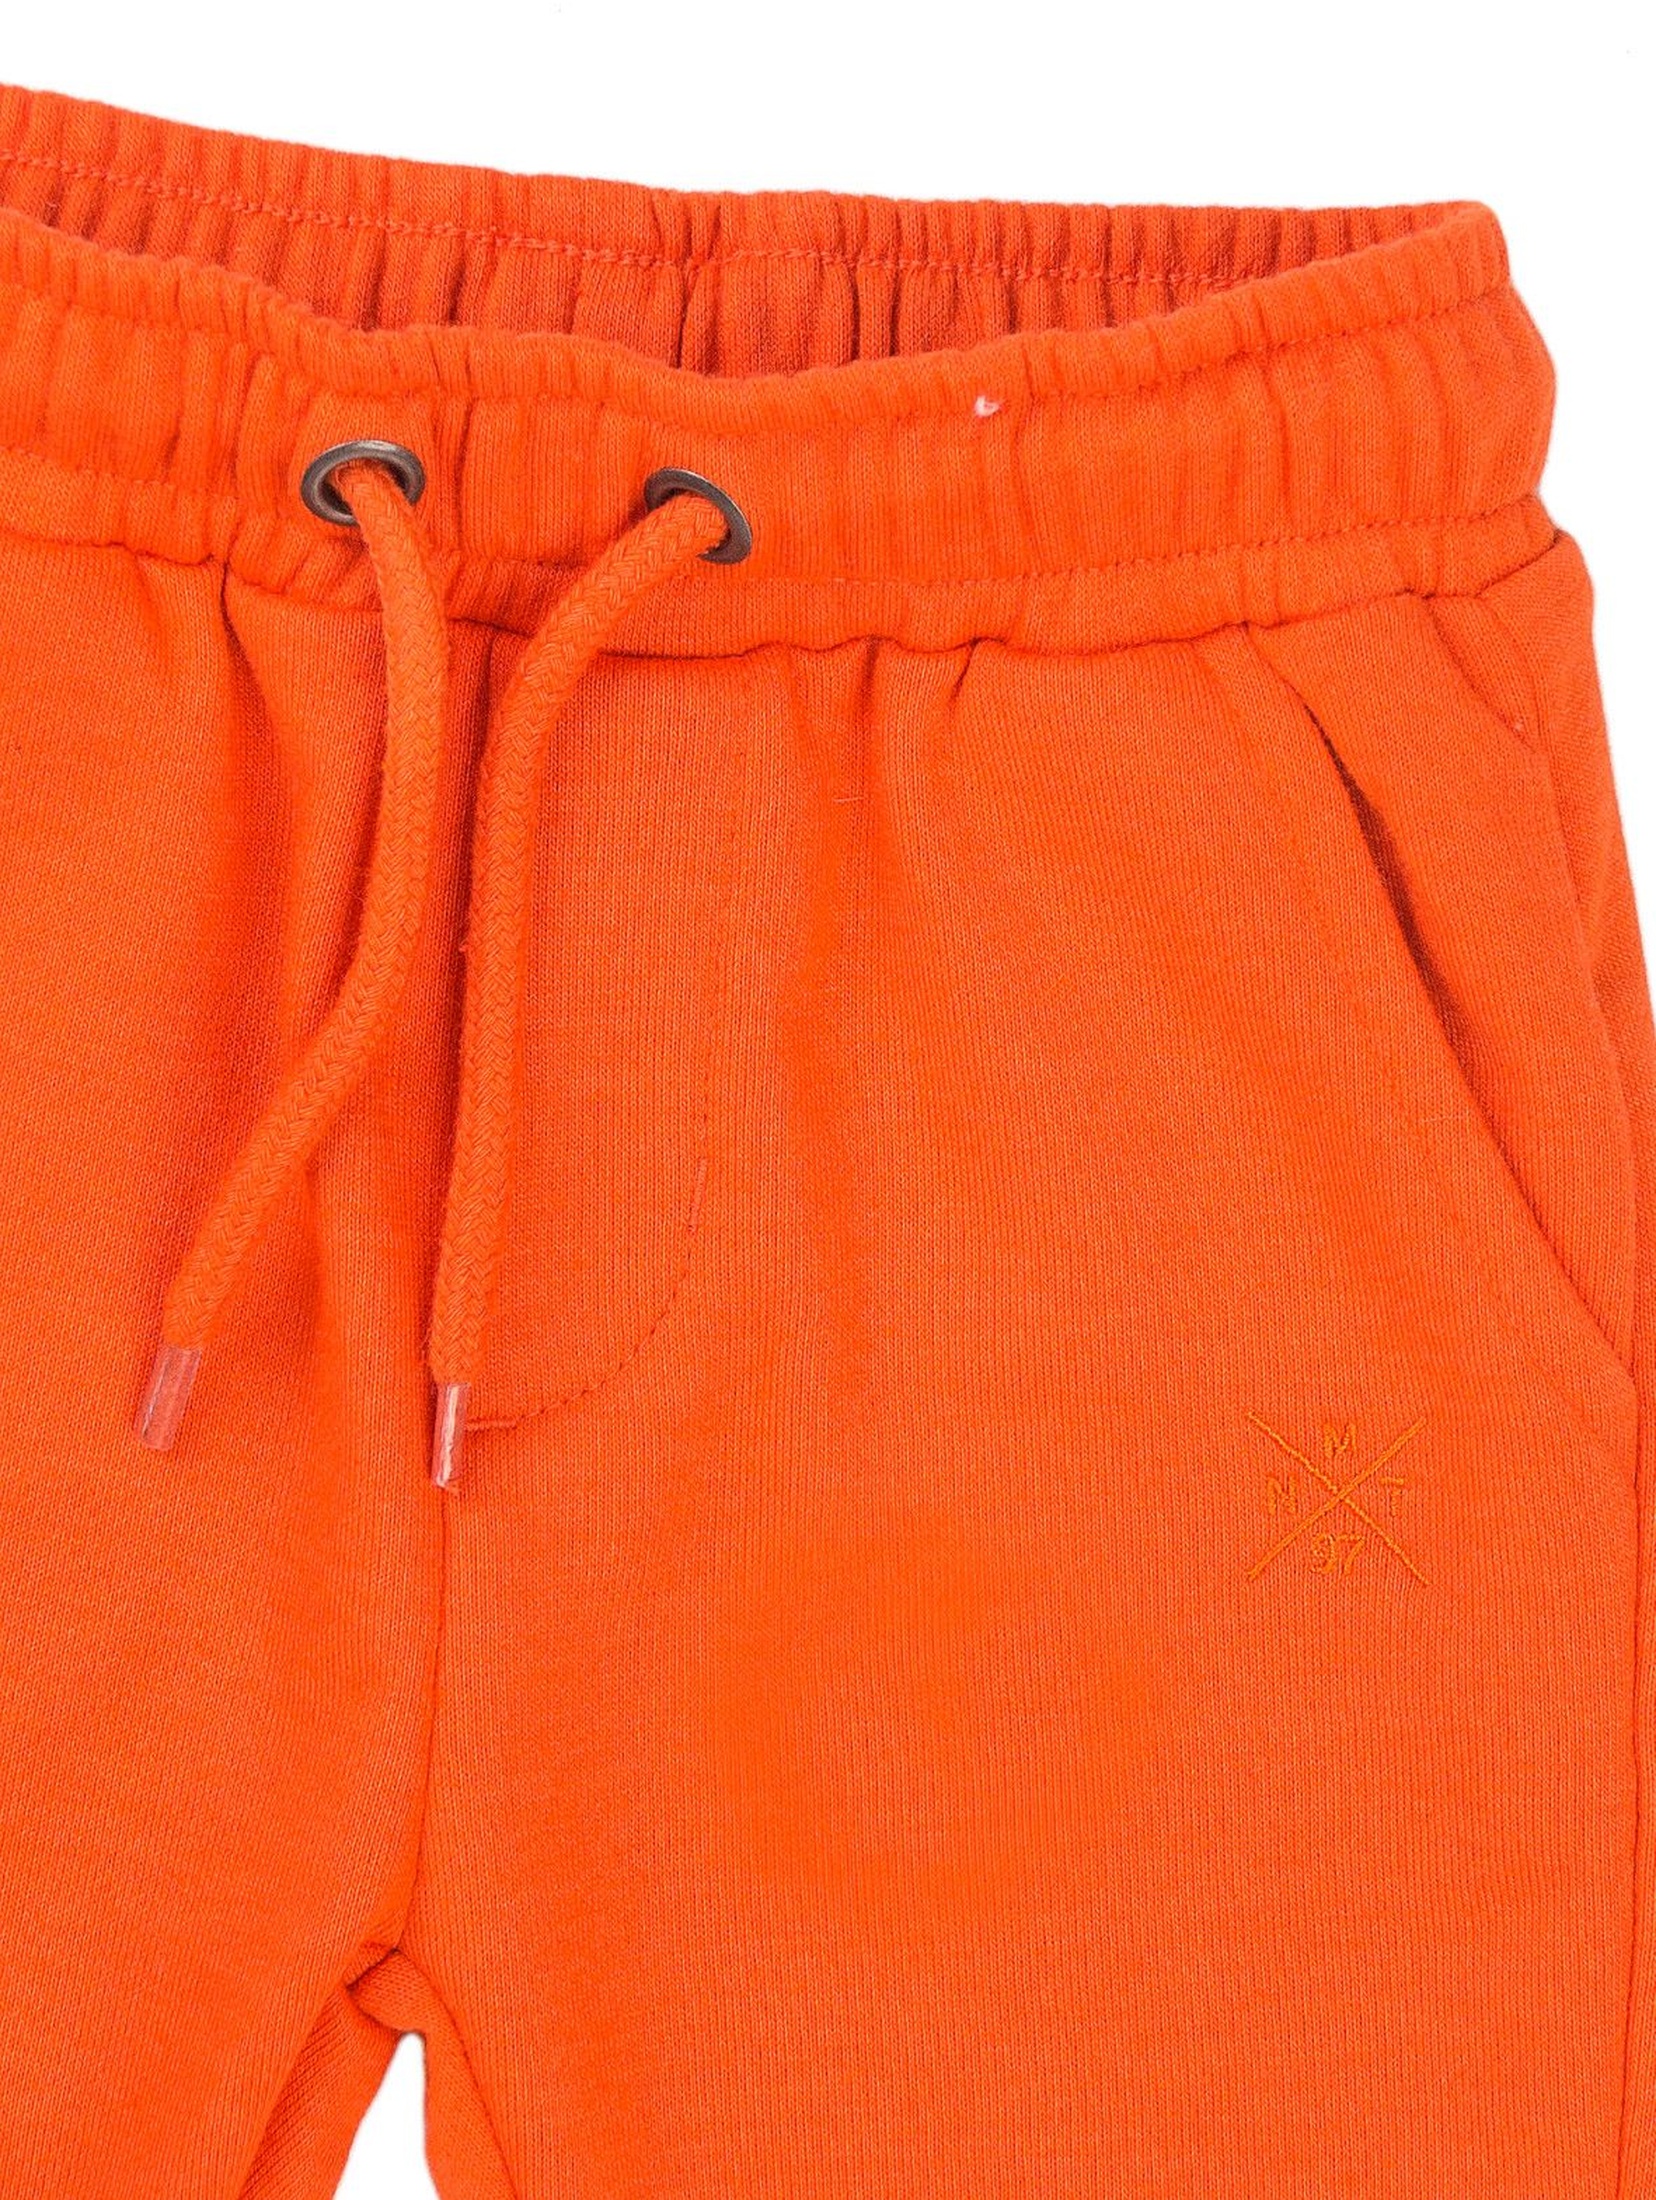 Spodnie dresowe chłopięce pomarańczowe